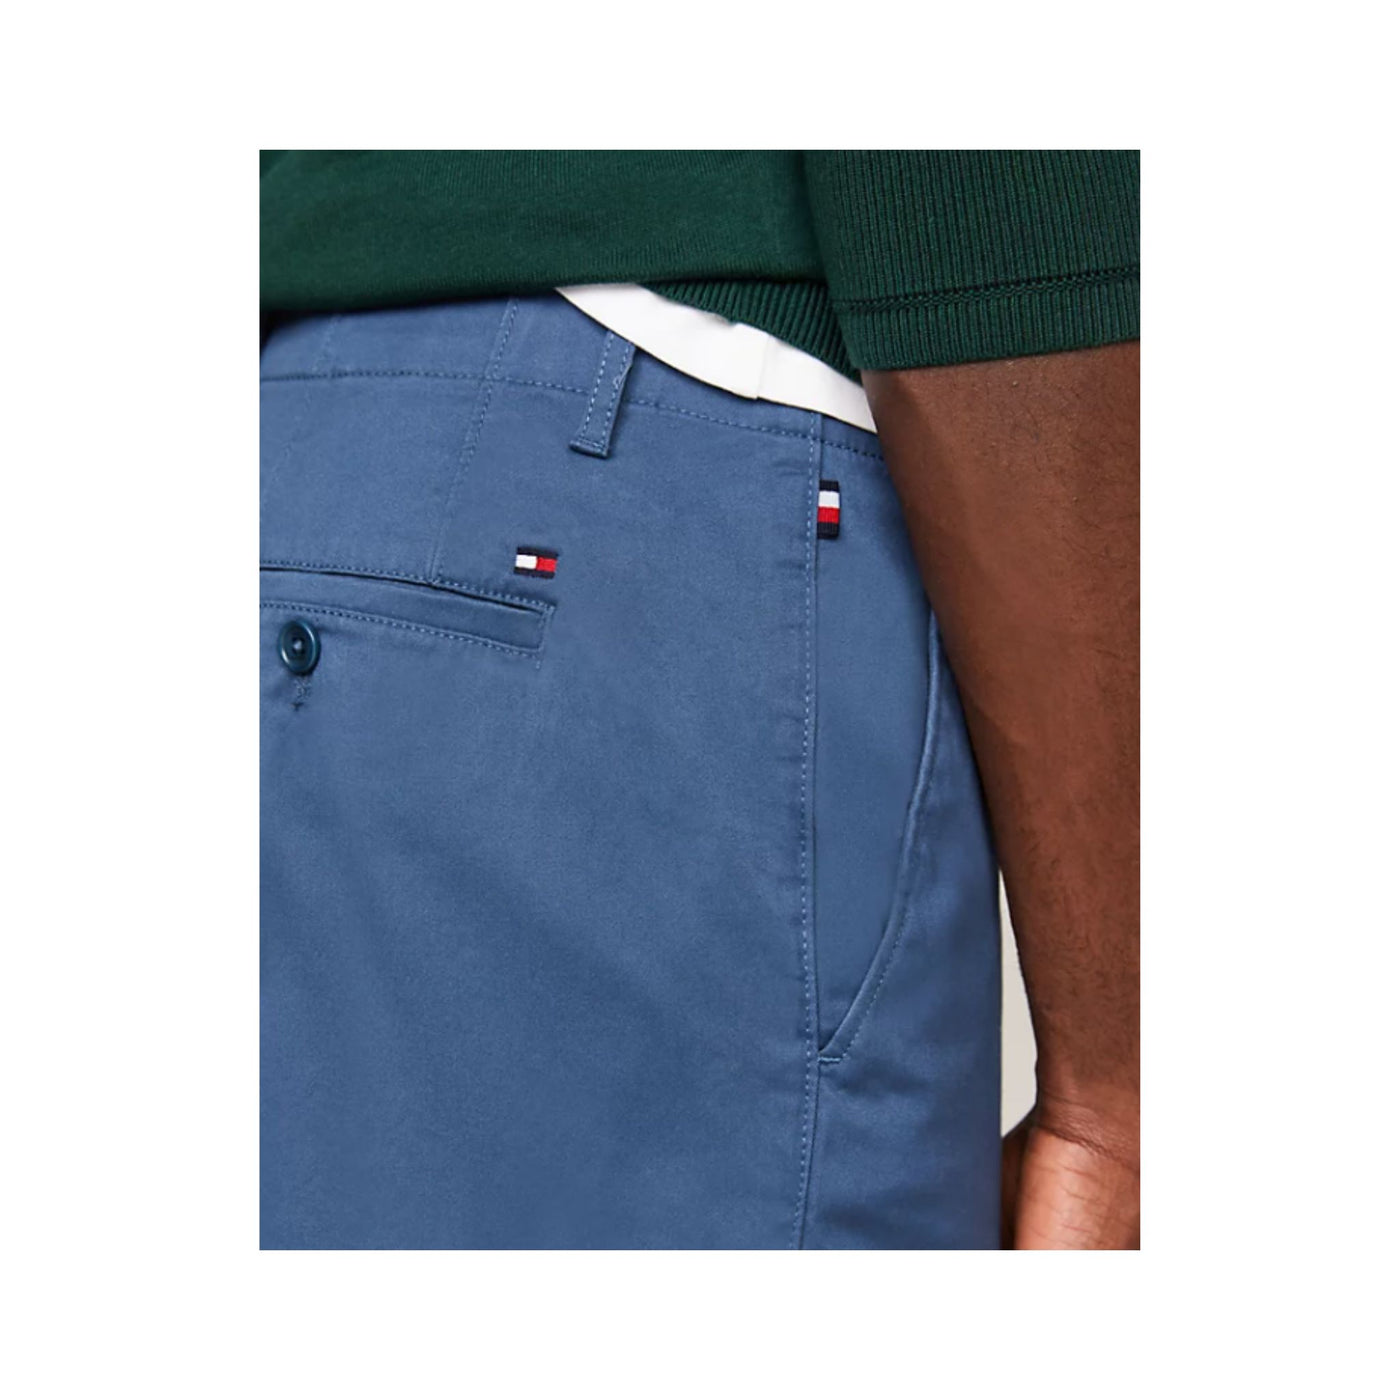 Immagine ravvicinata tasca con bottone sul retro e bandierina ricamata